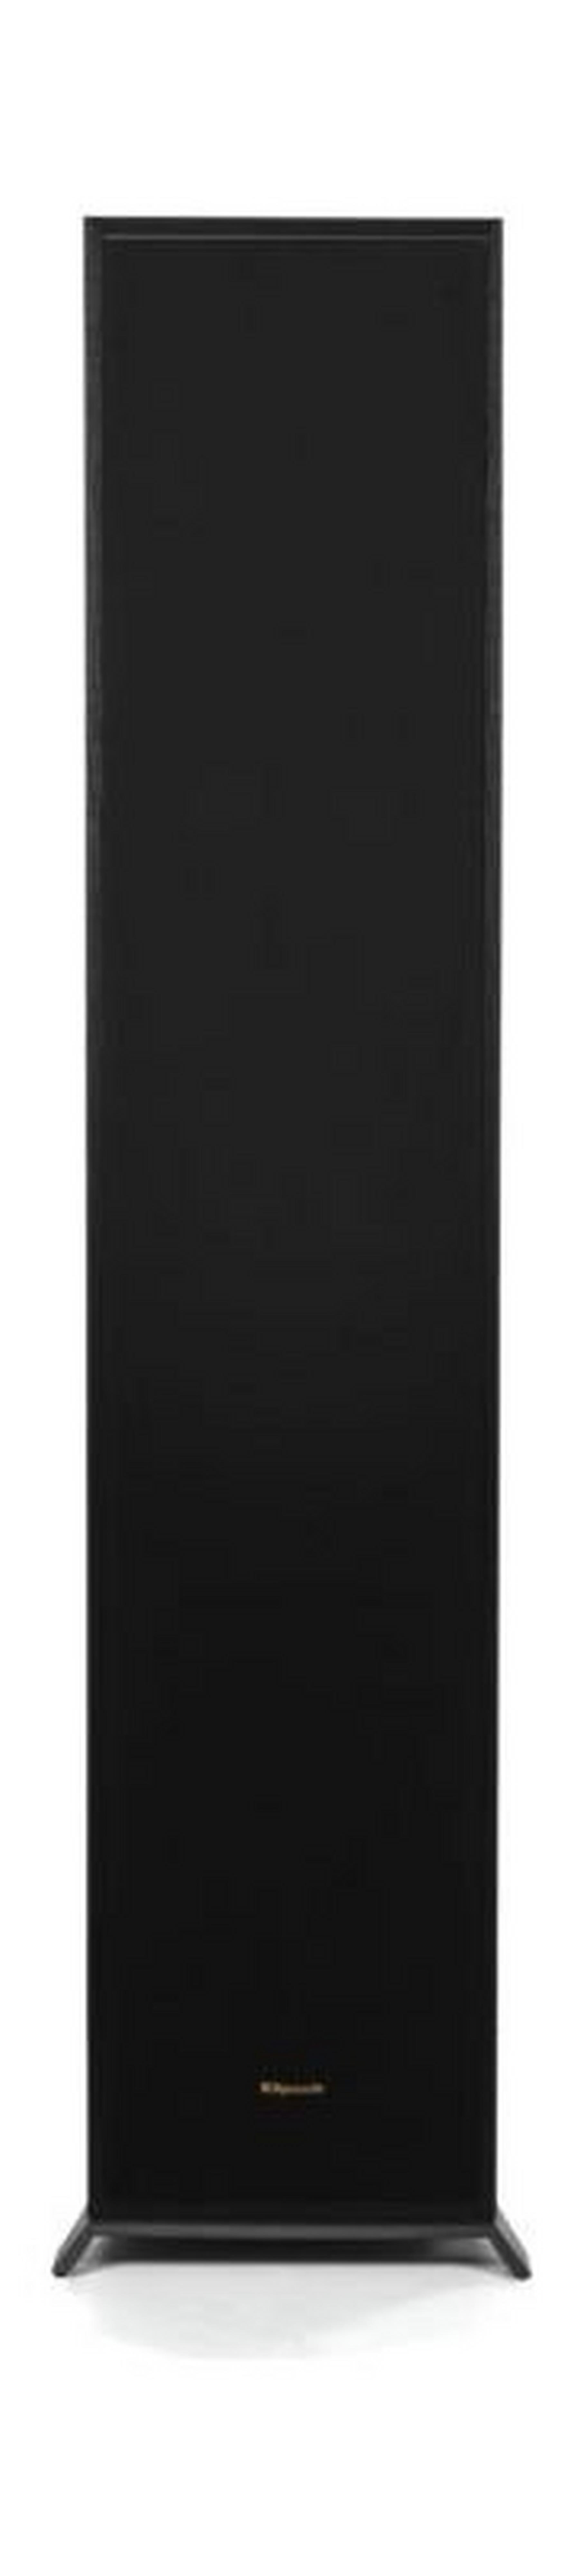 Klipsch R-620F Floorstanding Speaker - Black